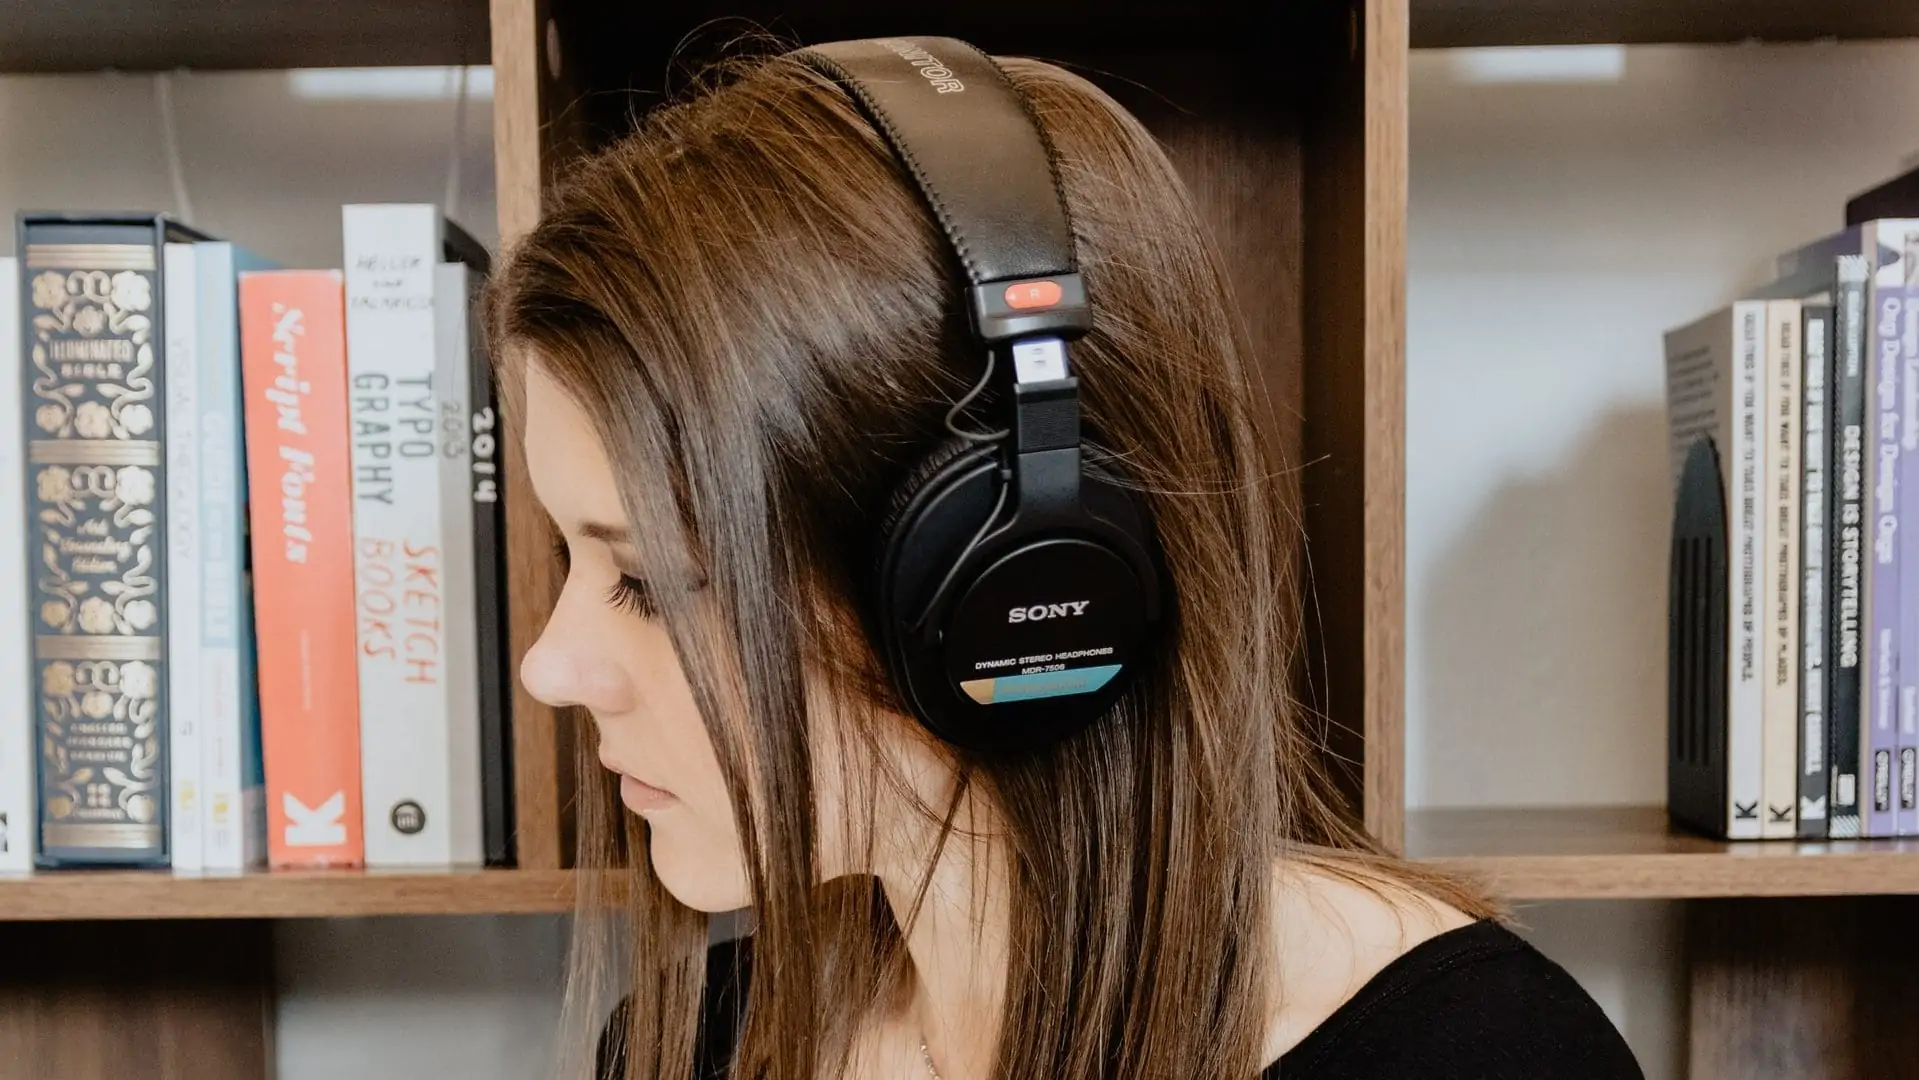 Vrouw met over-ear headset op, voor een boekenkast